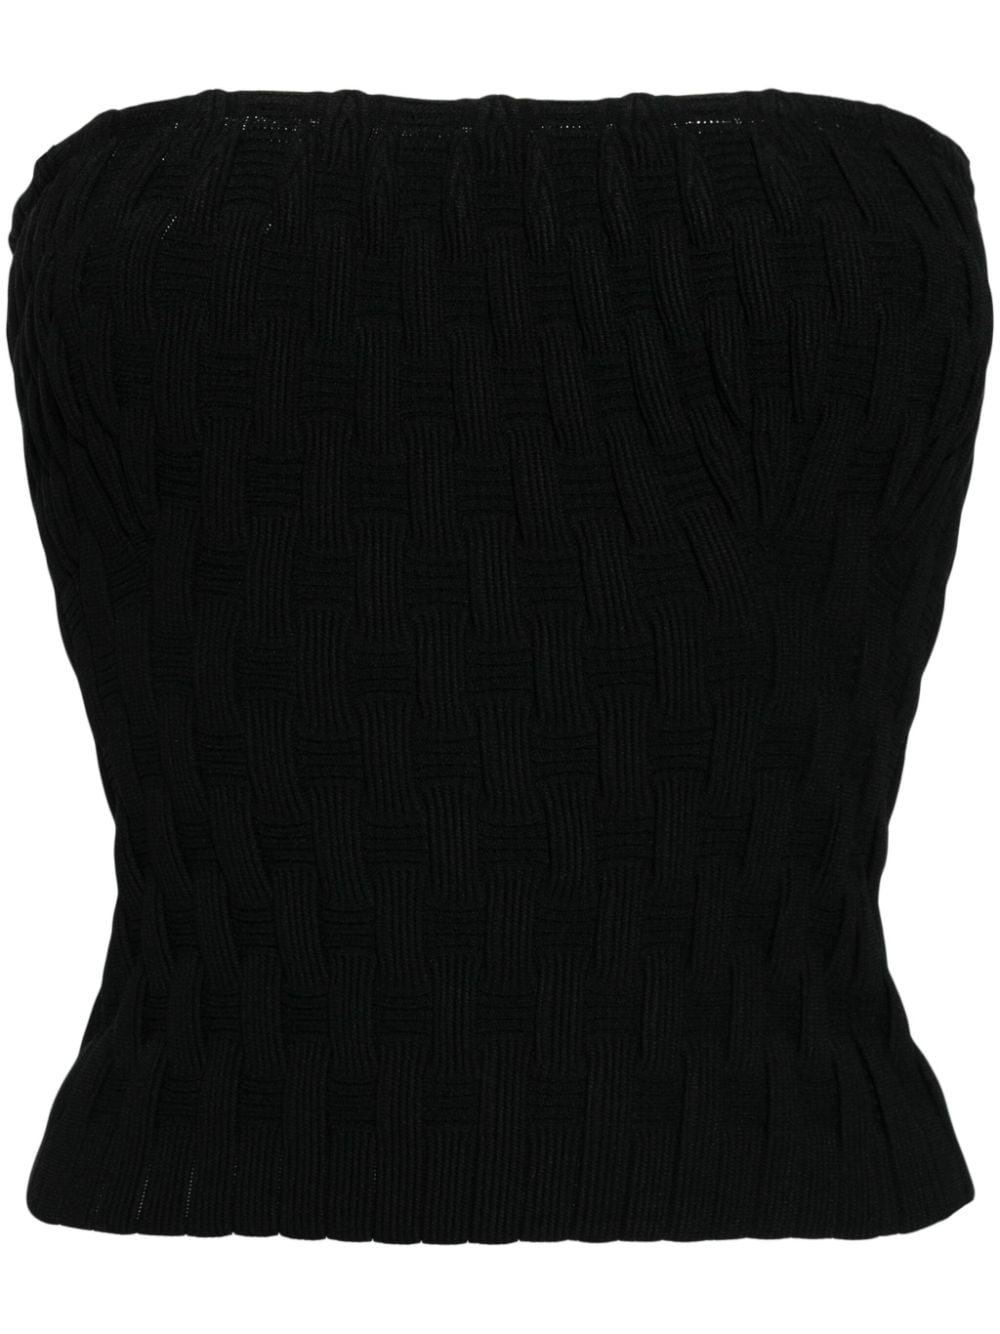 JNBY strapless knitted top - Black von JNBY